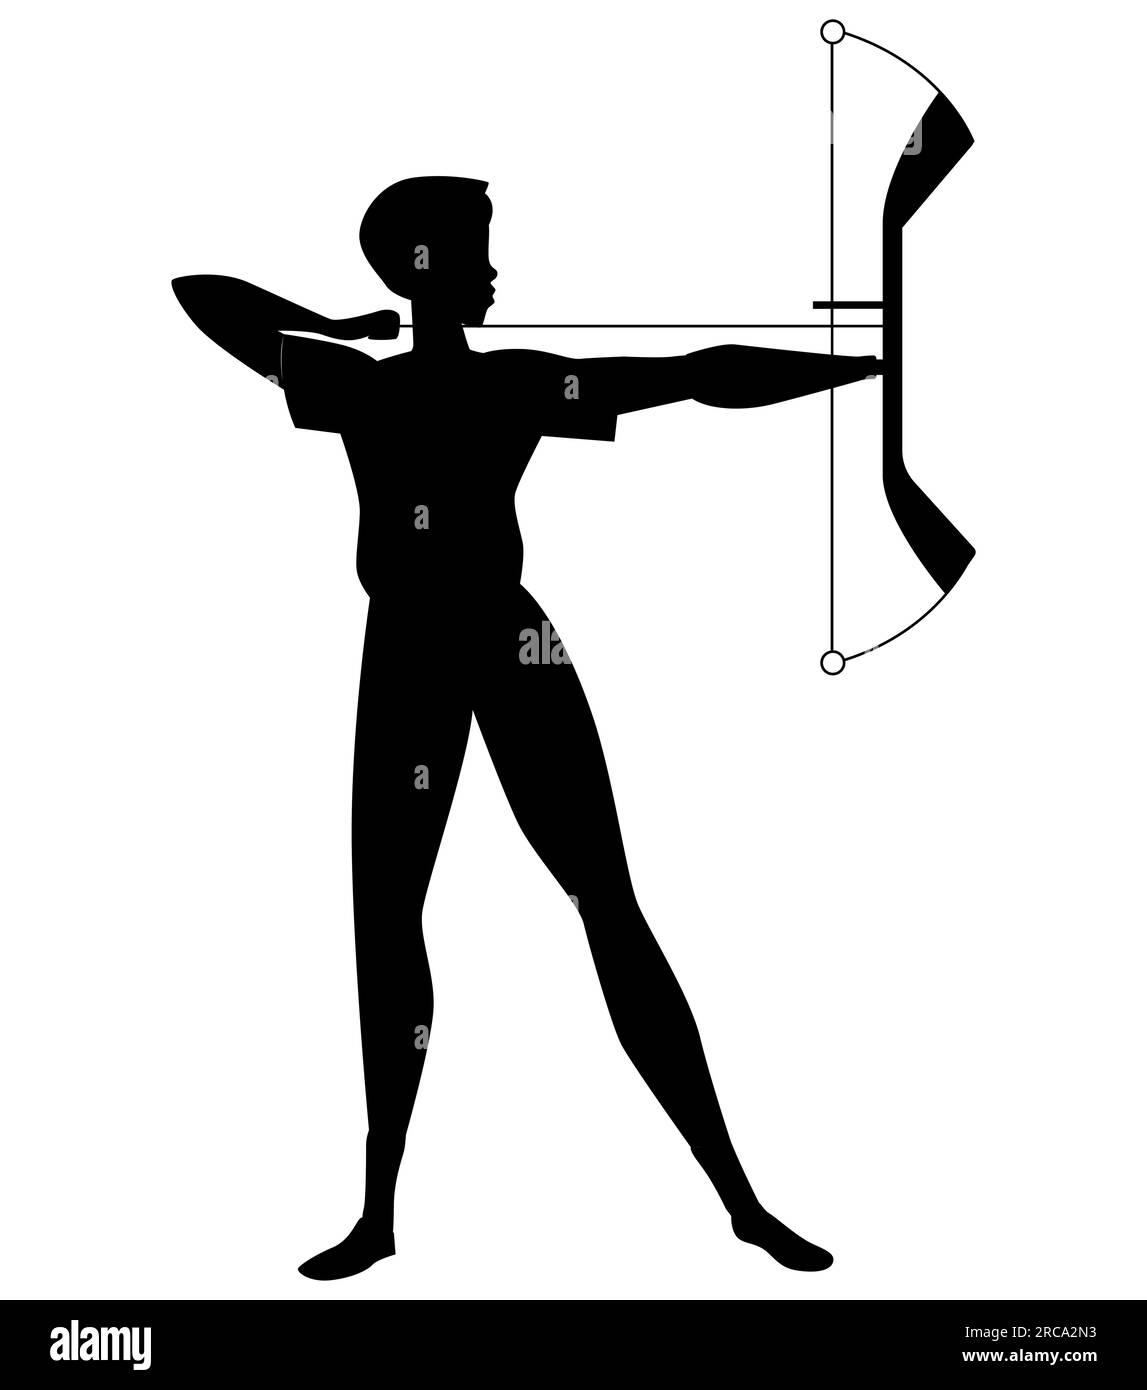 Schwarze Silhouette eines Bogenschützenspielers, eine Frau, die mit einem Pfeil in einer stehenden Pose zielt, Vektordarstellung isoliert auf weißem Hintergrund Stock Vektor